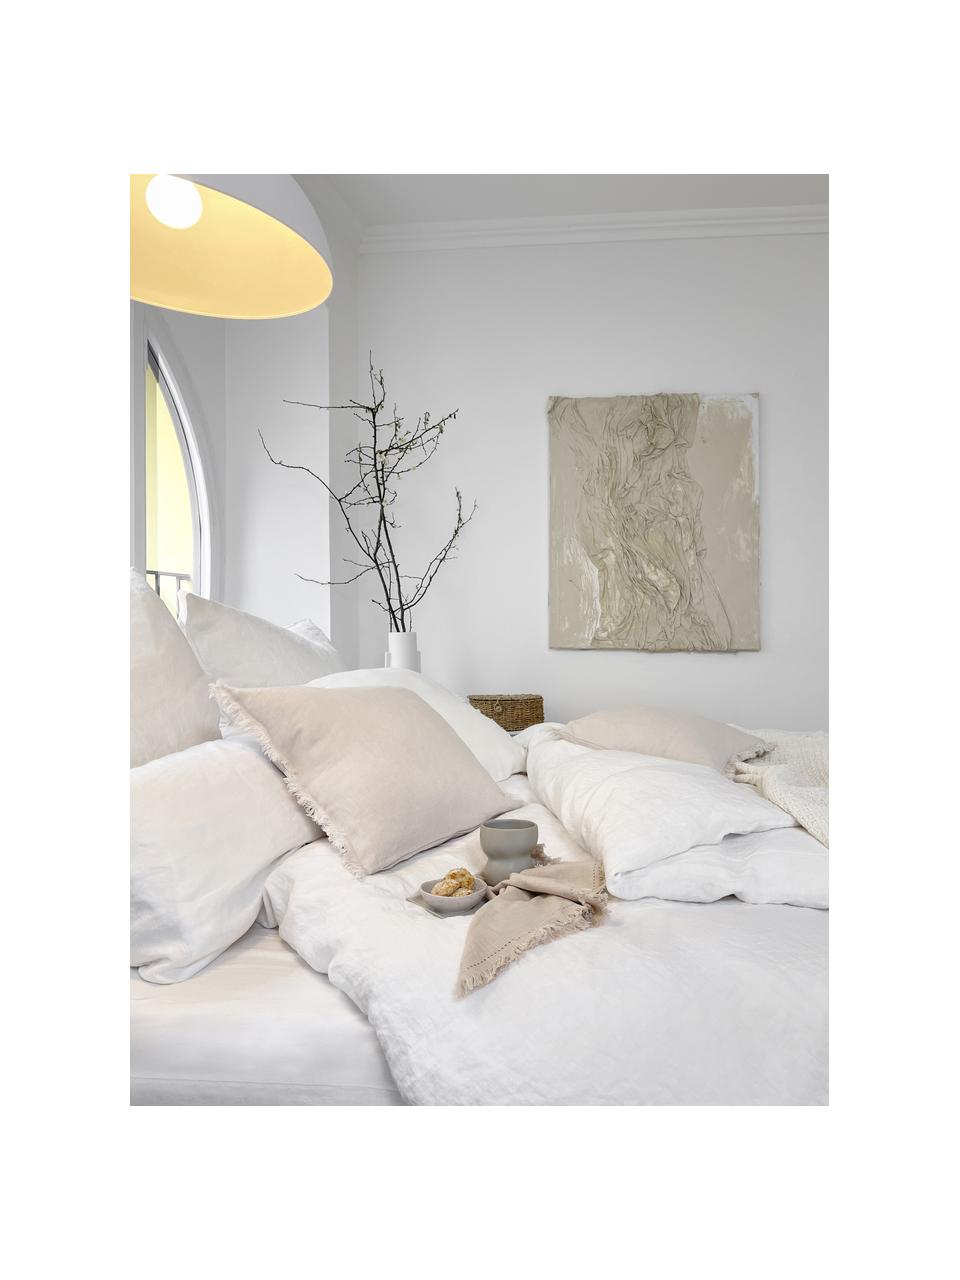 Poszewka na poduszkę z lnu z efektem sprania Nature, 2 szt., Biały, S 40 x D 80 cm